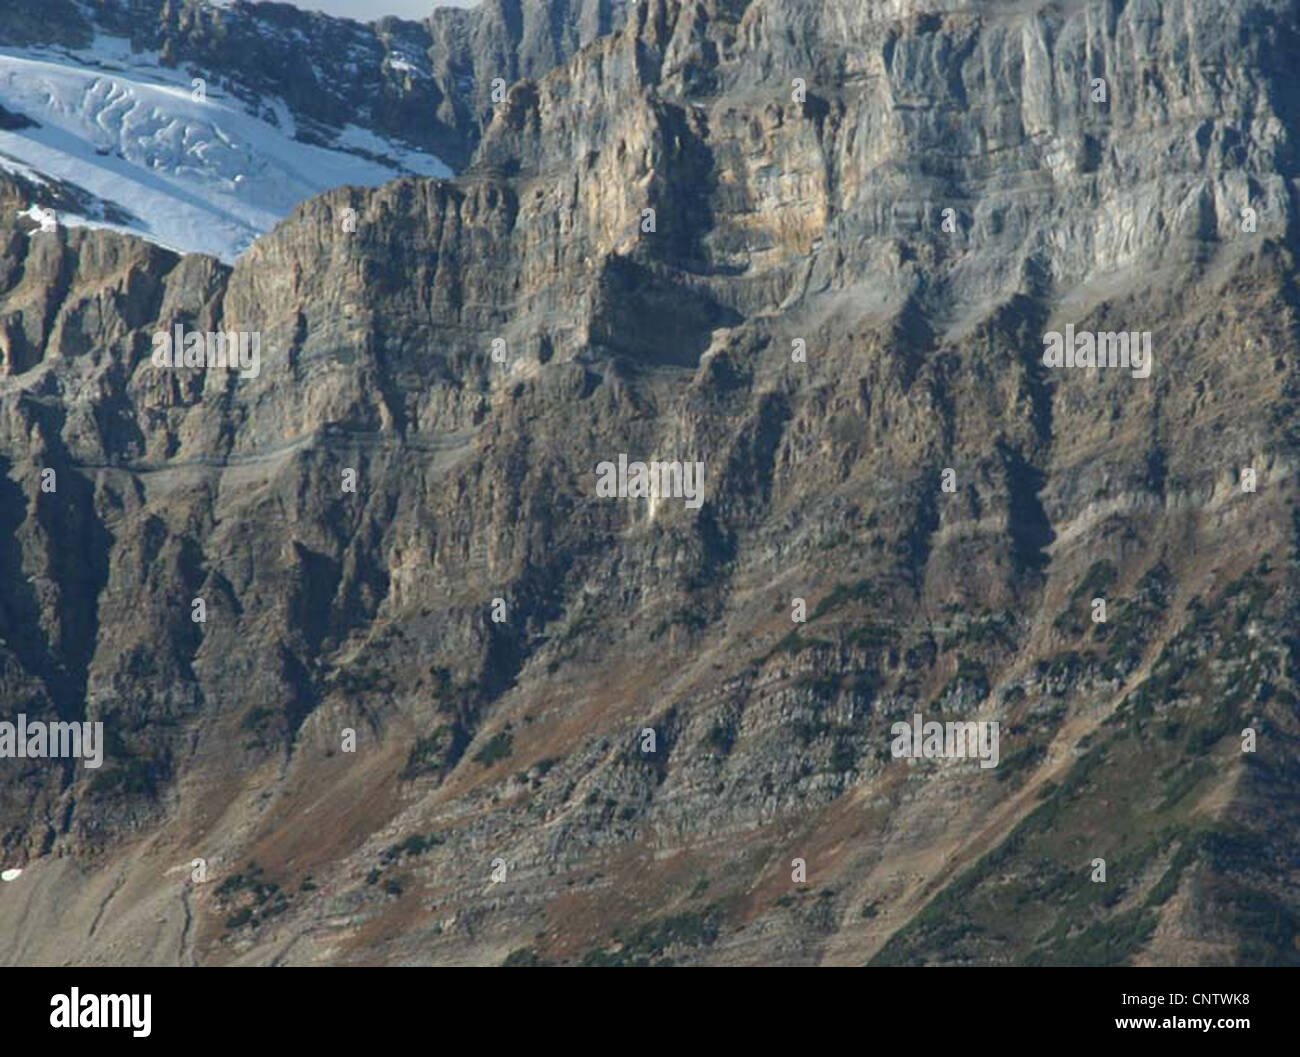 Les montagnes sculptées de Glacier et de crêtes, Columbia Icefields Parkway, Rocheuses, Banff, Jasper, Alberta, Canada Banque D'Images